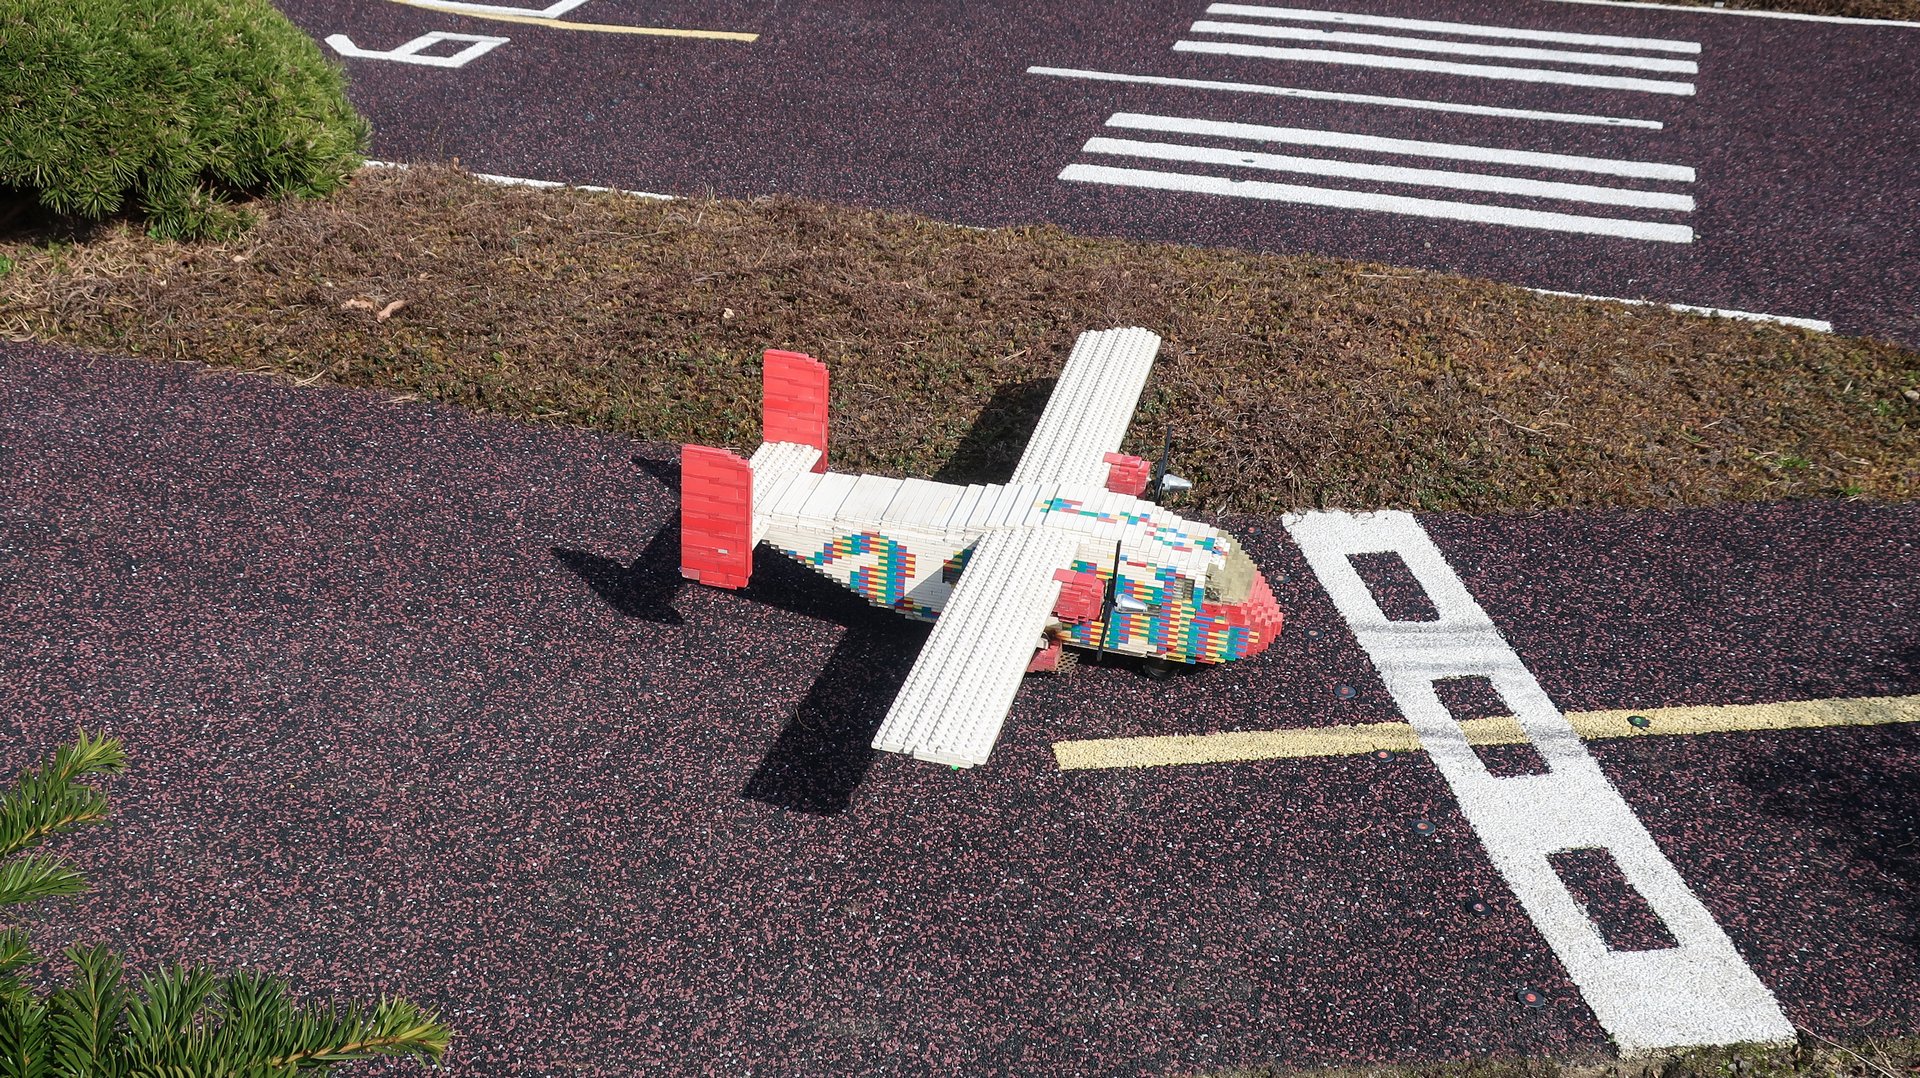 Самолет из LEGO в парке развлечений Леголенд в Дании